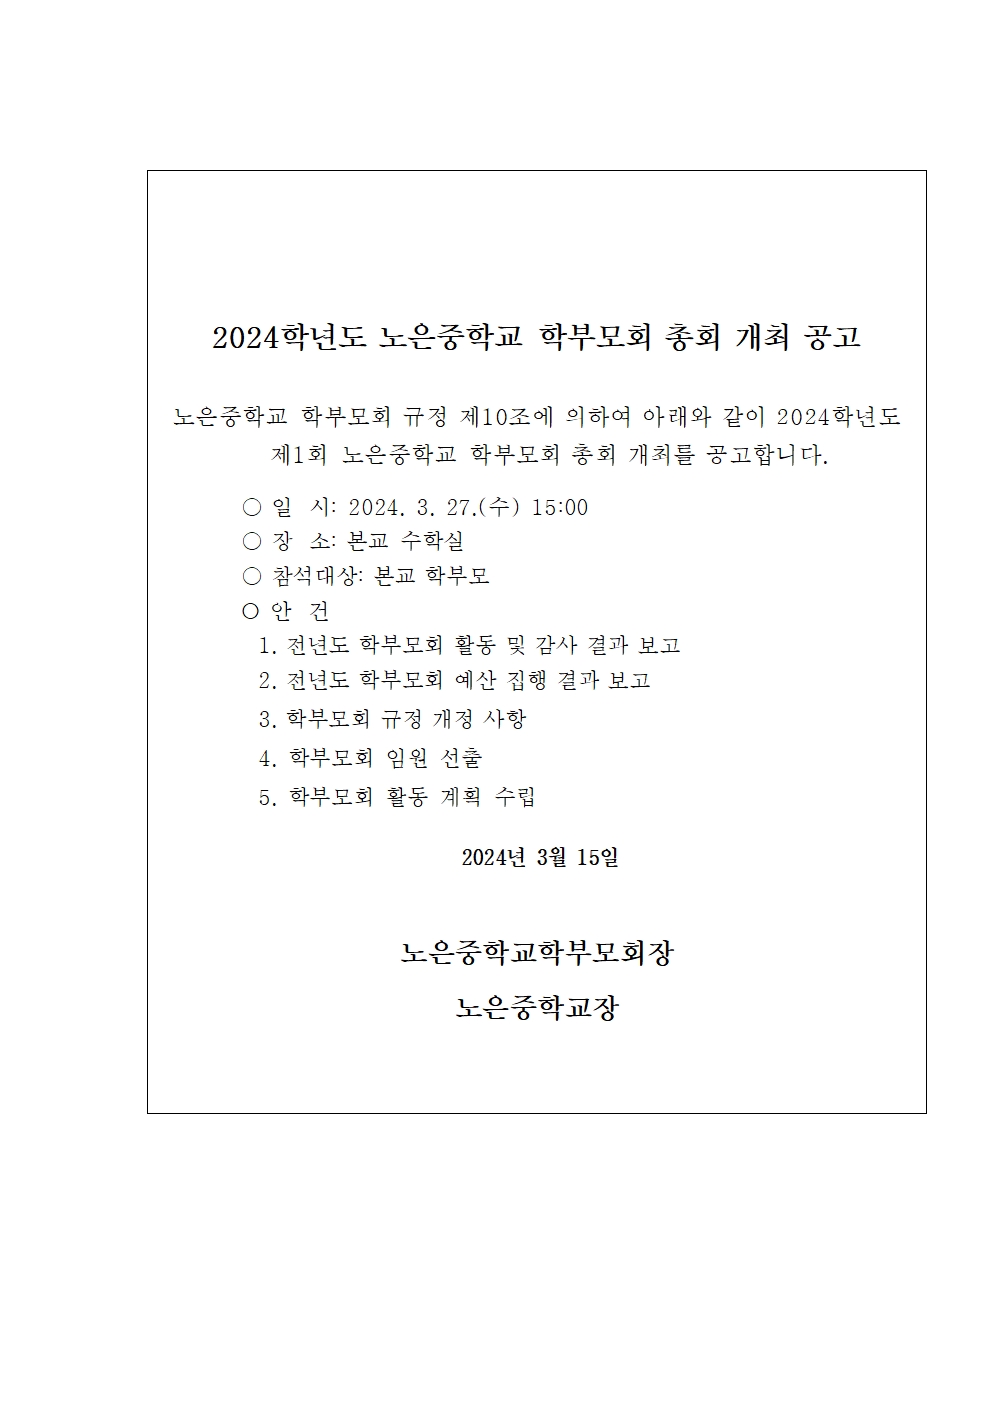 2024. 학부모회 정기총회 개최 공고(홈페이지 게시용)001